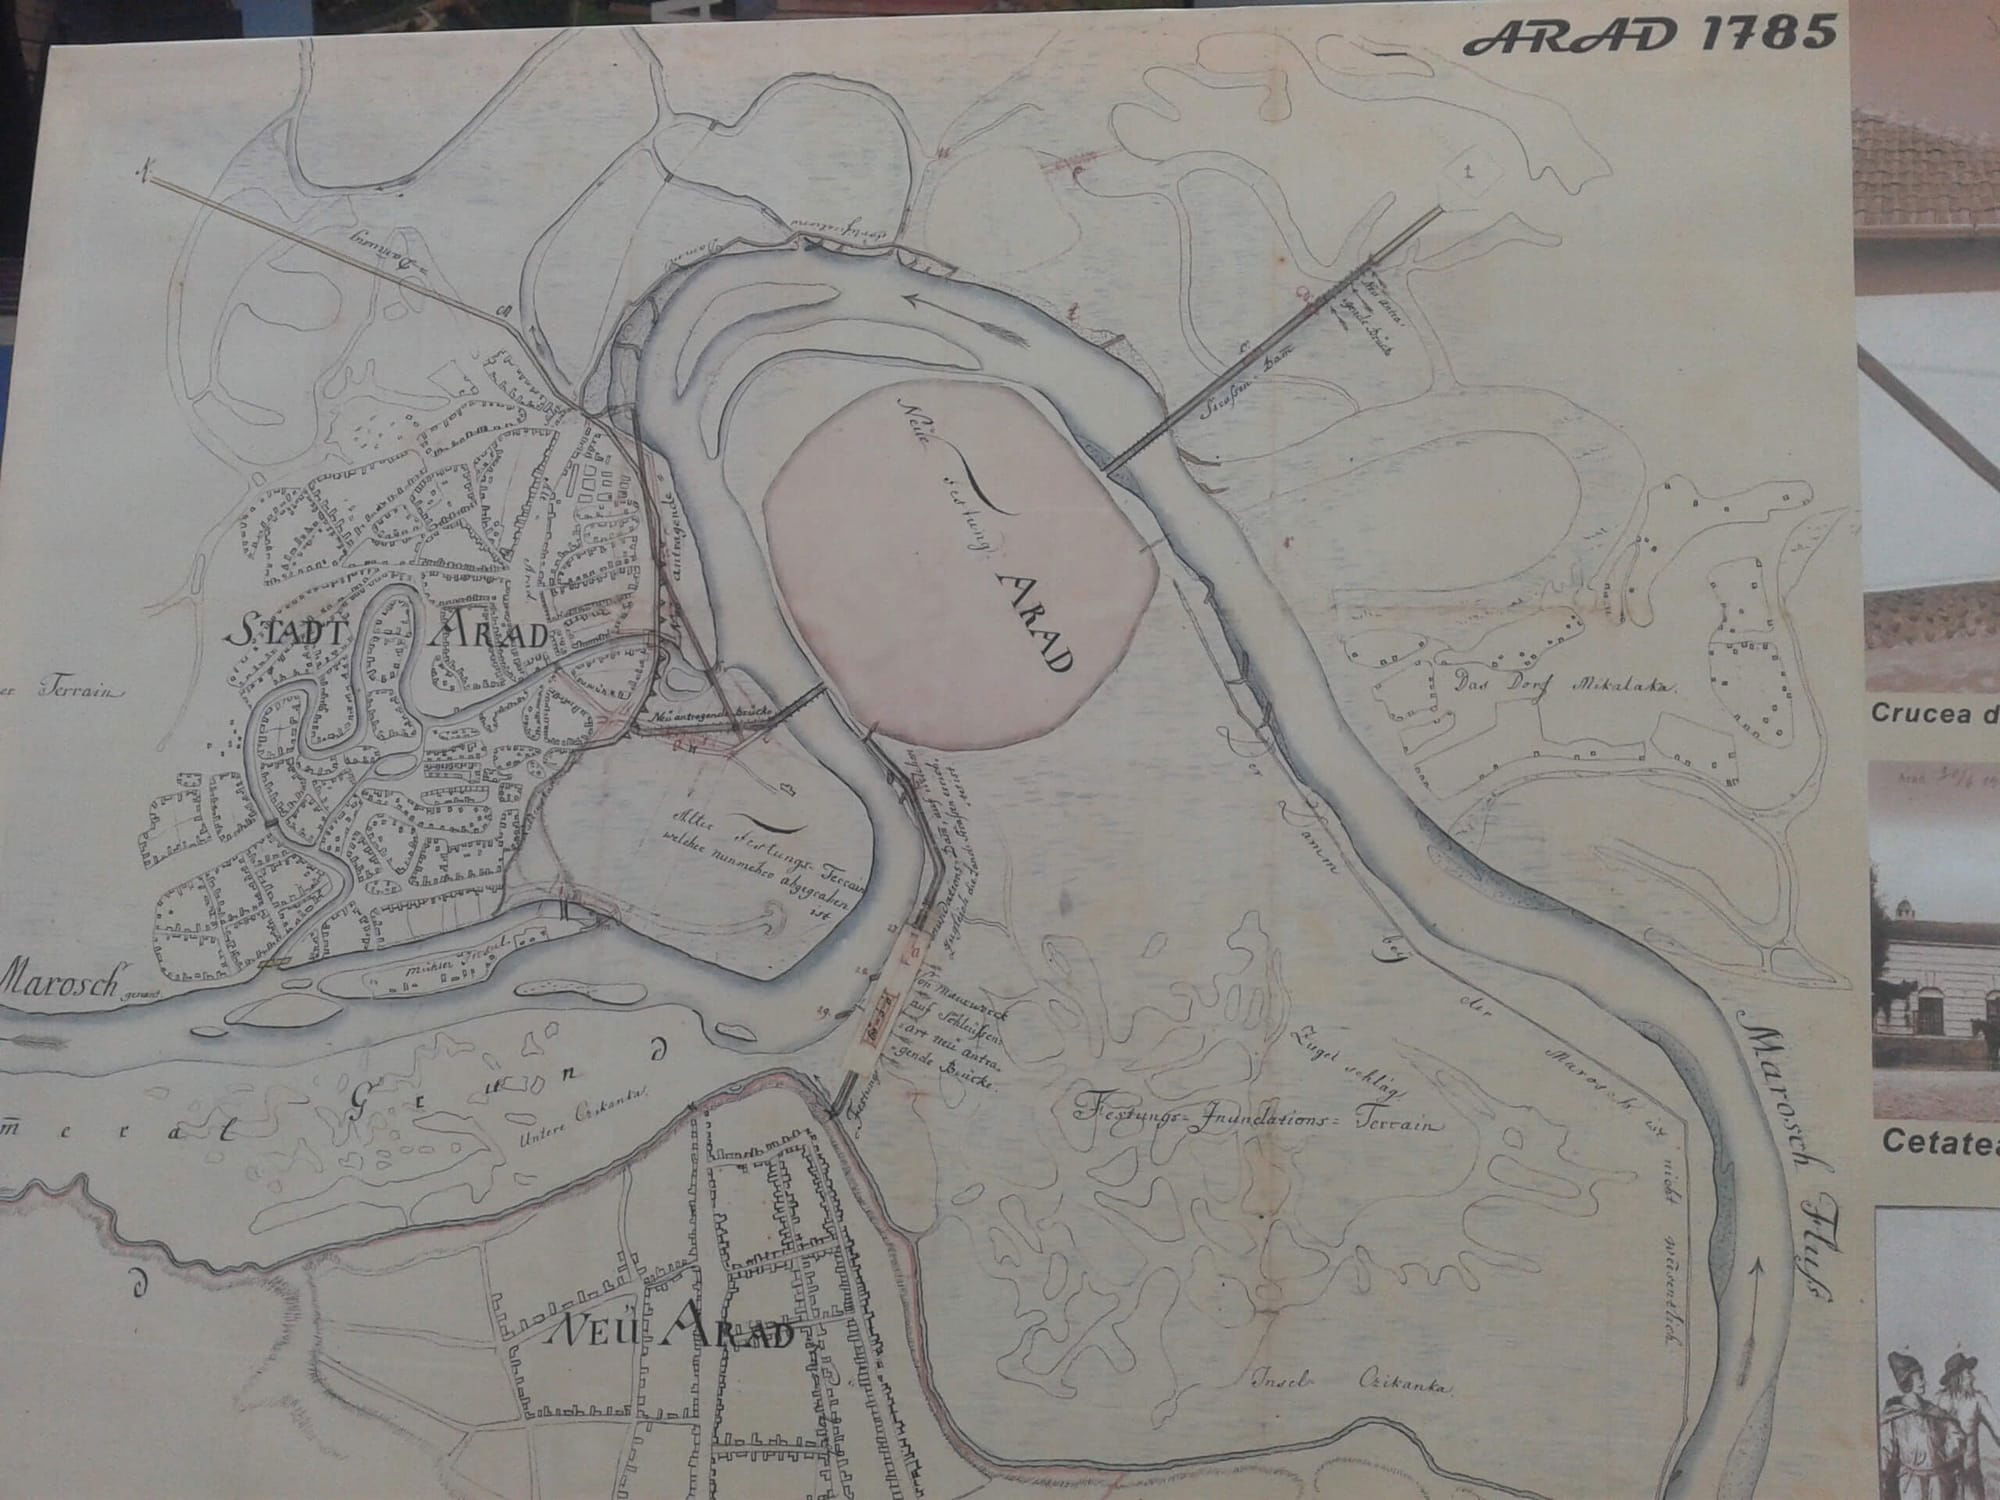 Harta Aradului la 1785